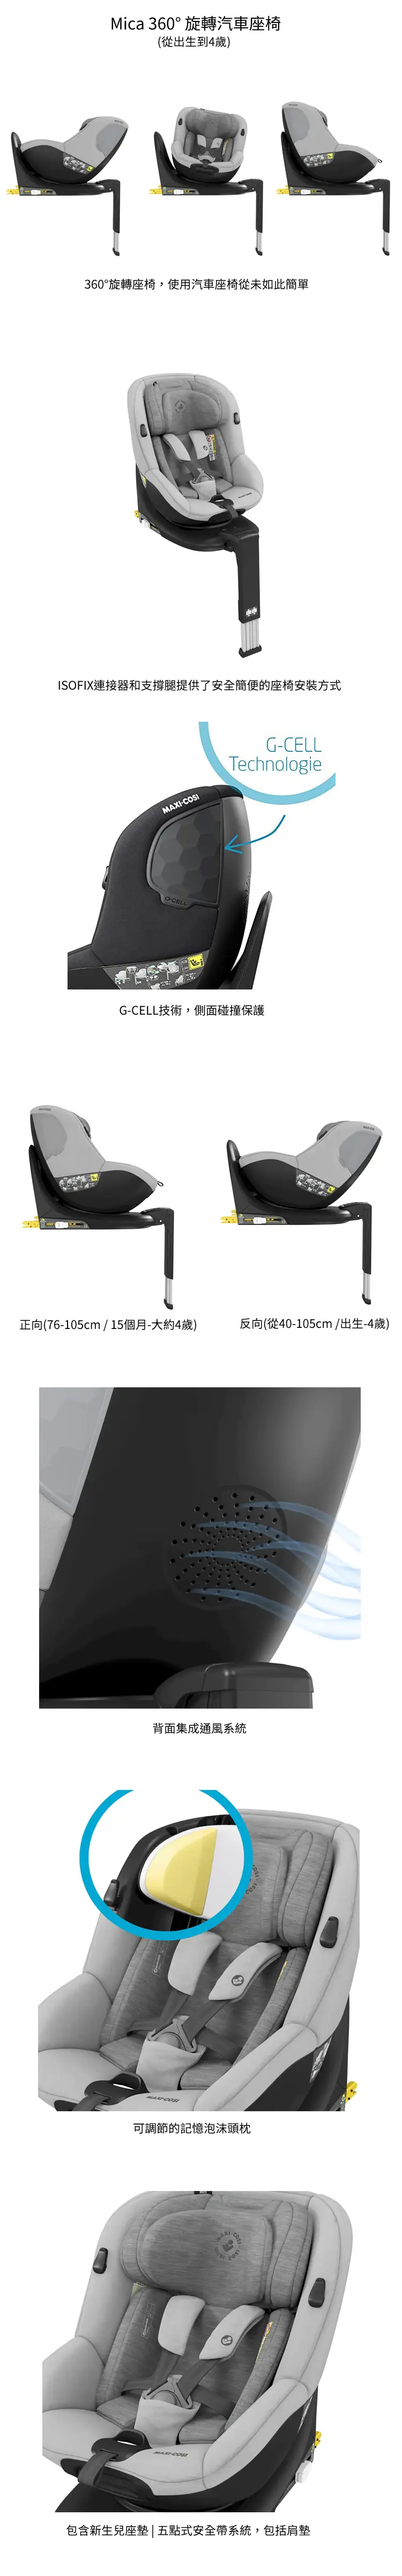 Maxi Cosi Mica 360°可旋轉汽車座椅